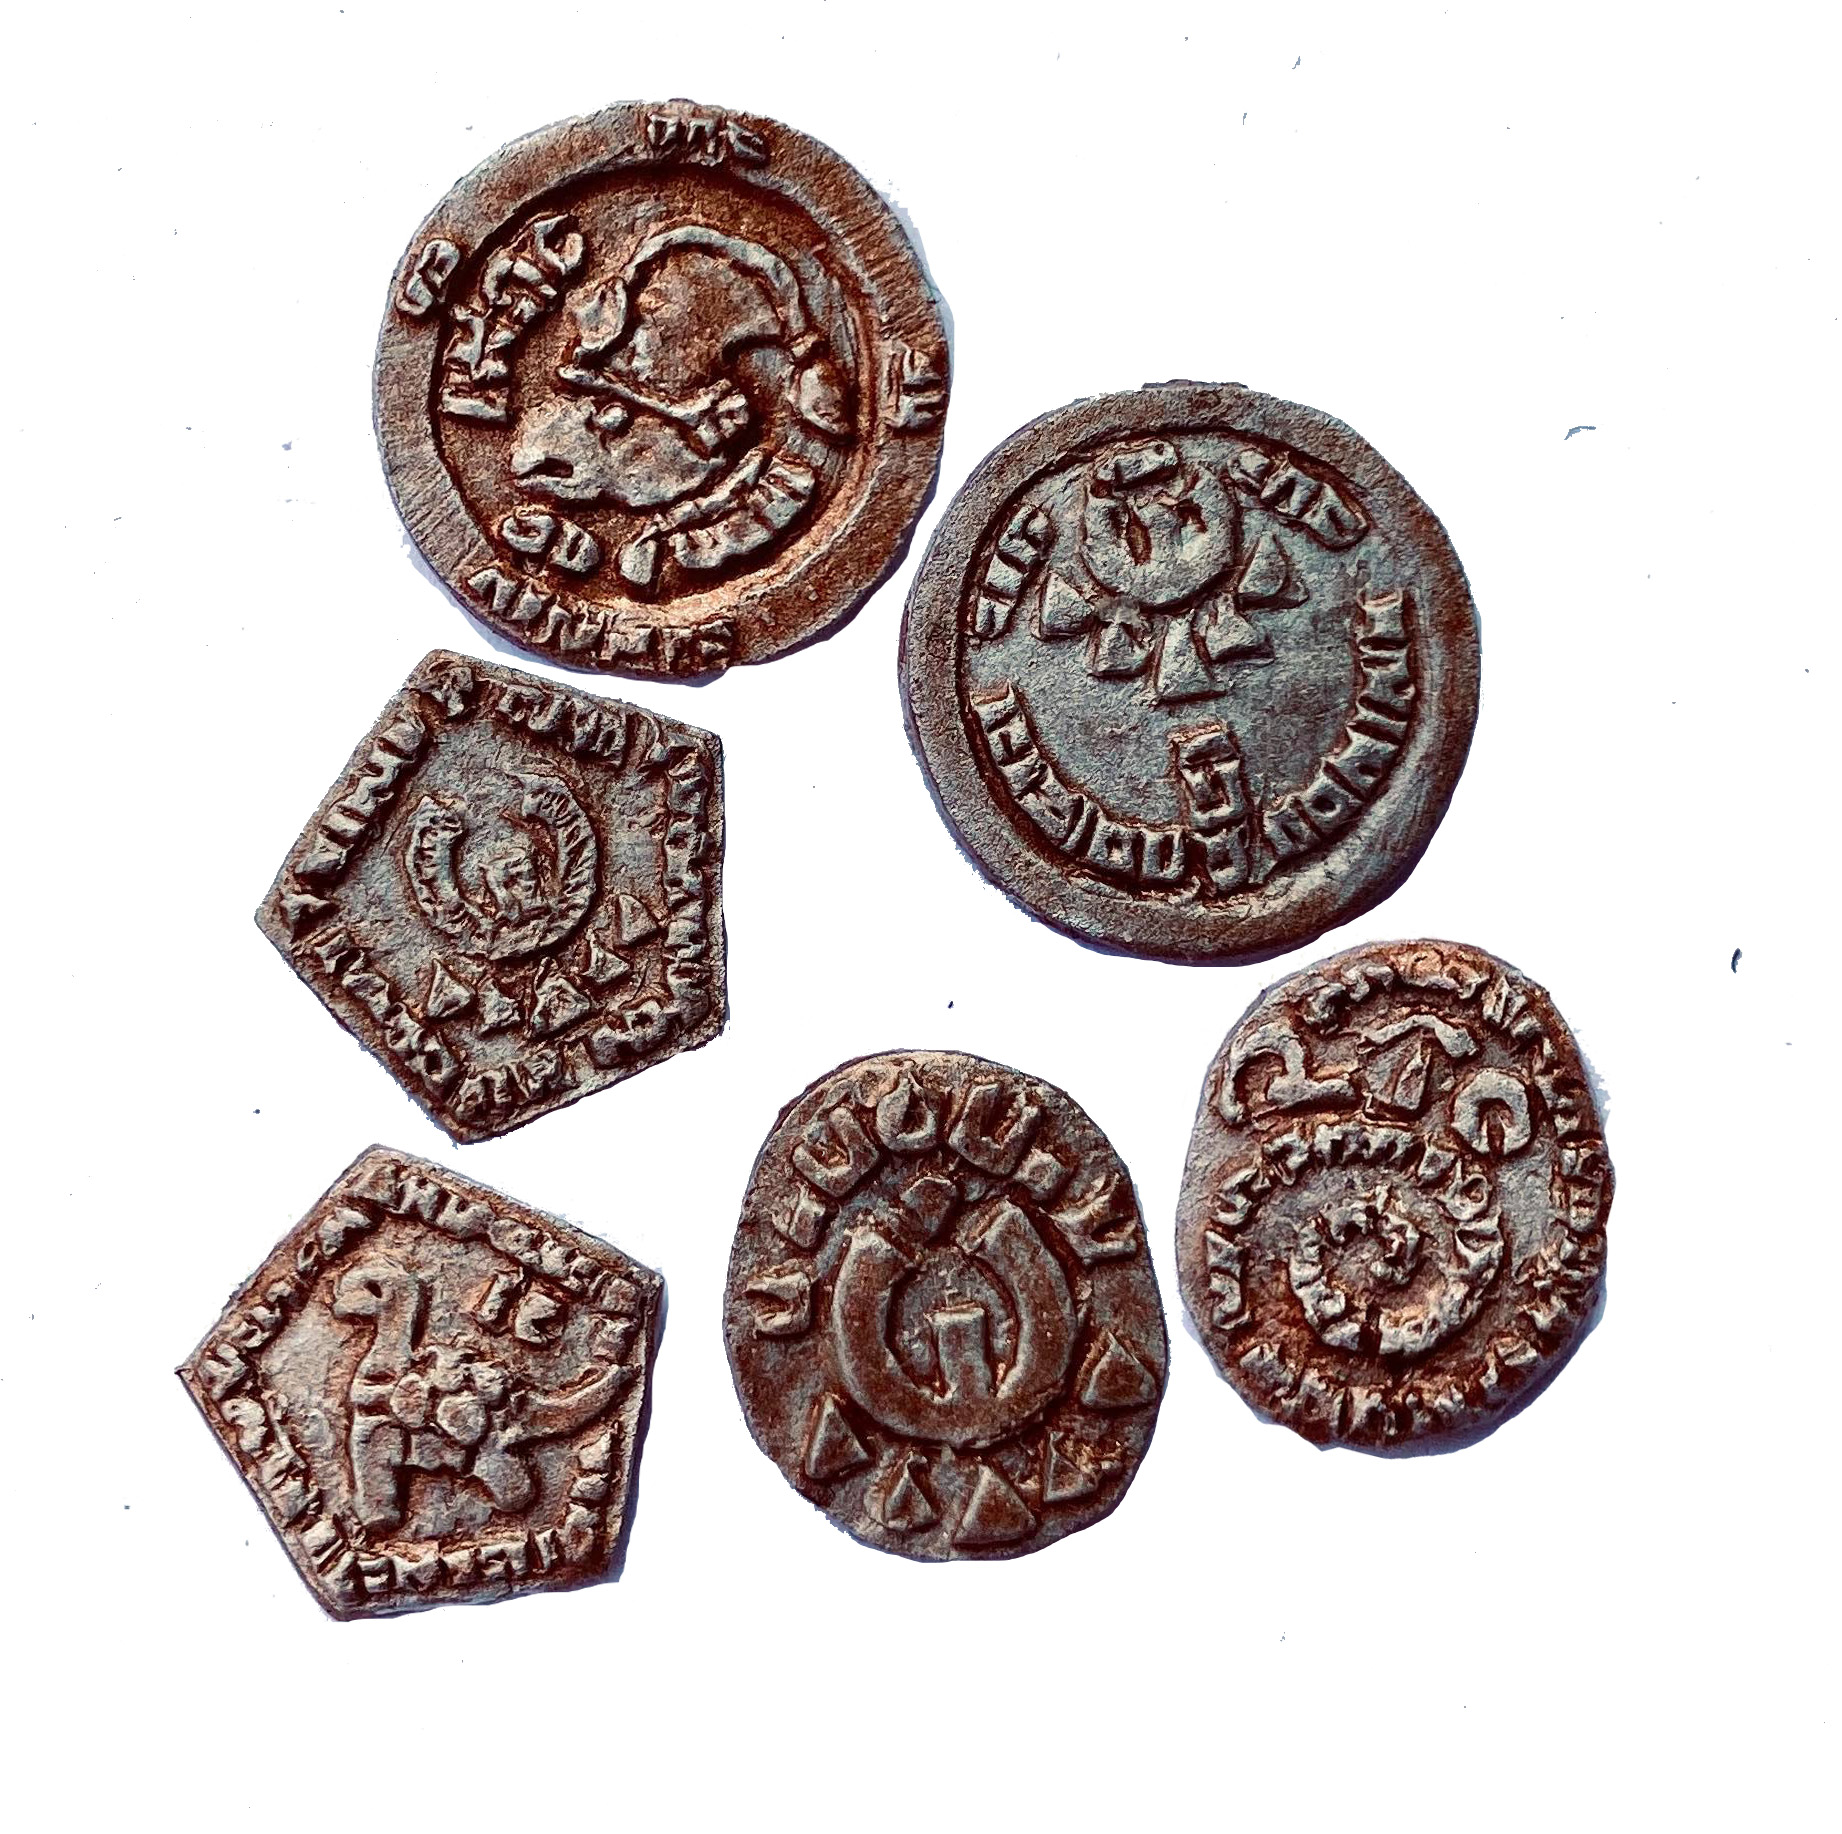 Fubarnii Coins (6 coins)